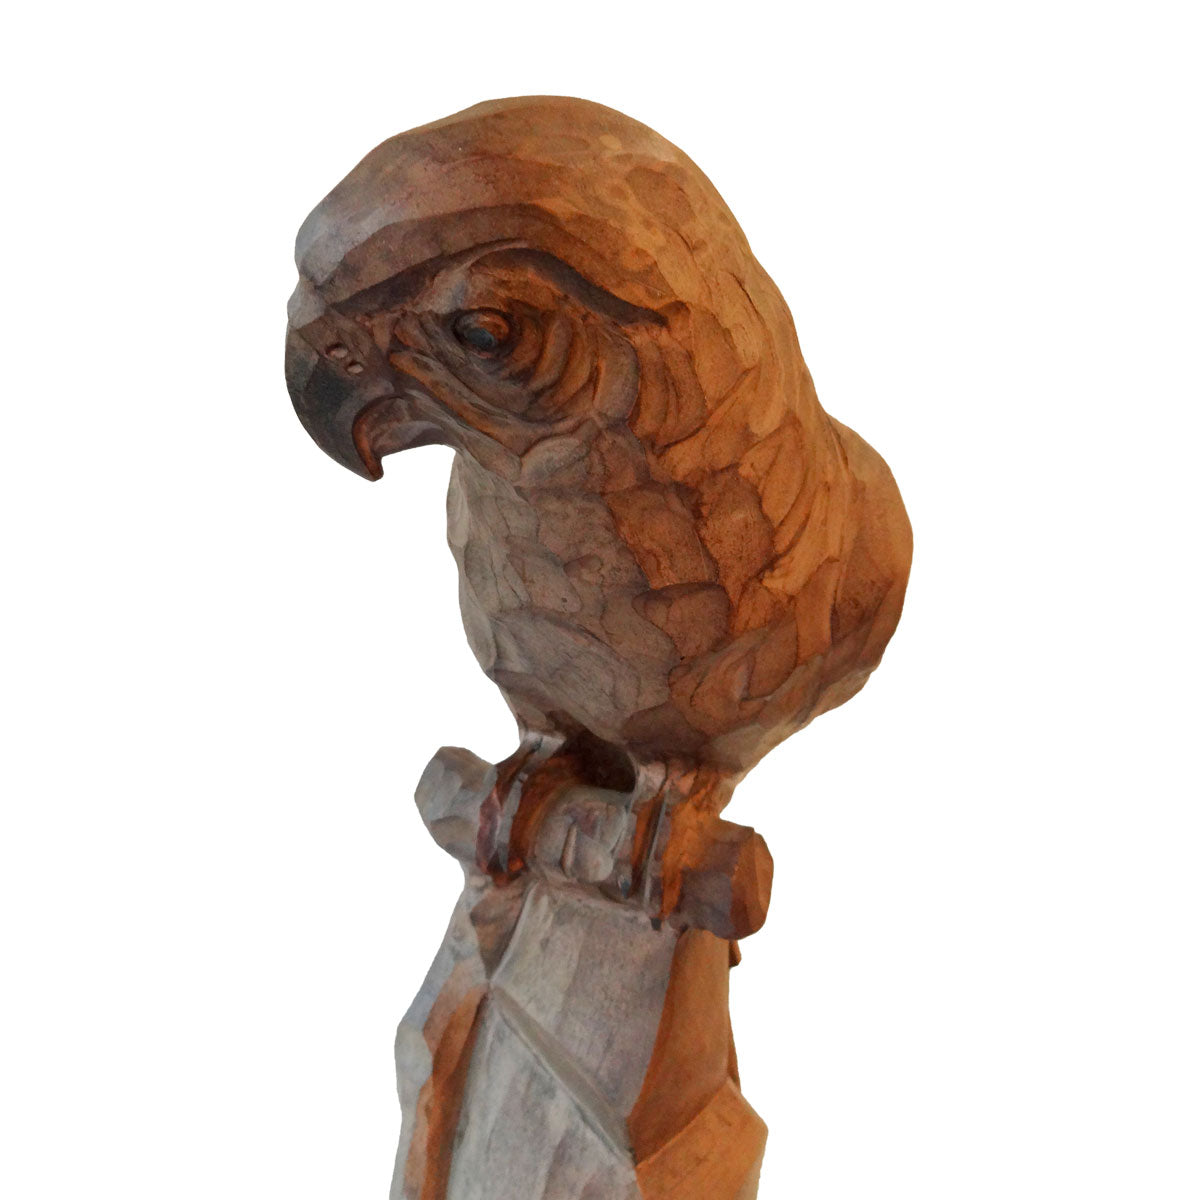 Papegøje af fajance fremstillet hos firmaet Imperial Amphora